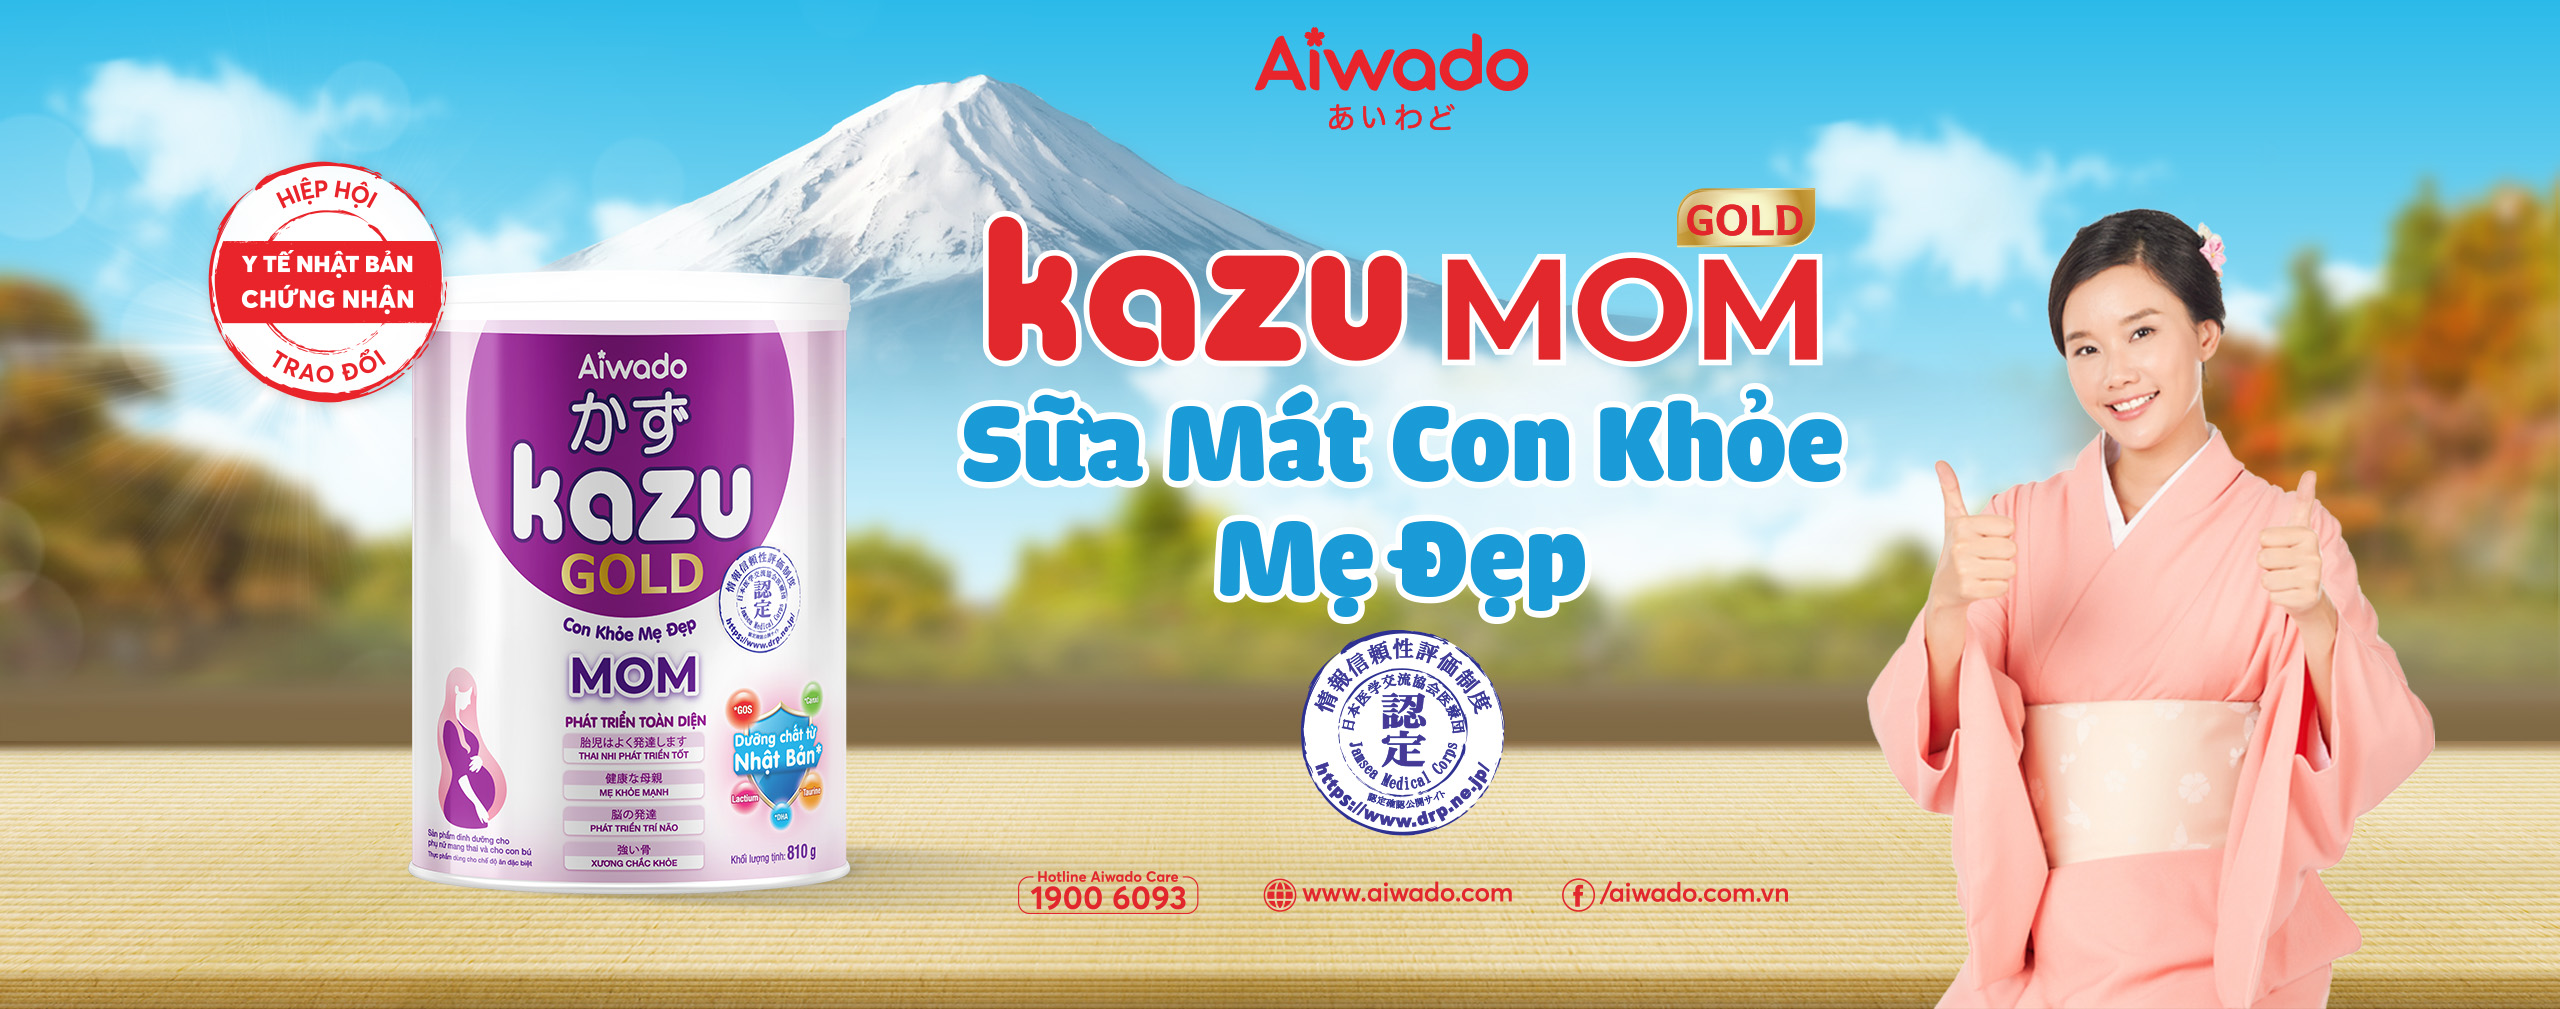 Kazu Mom Gold